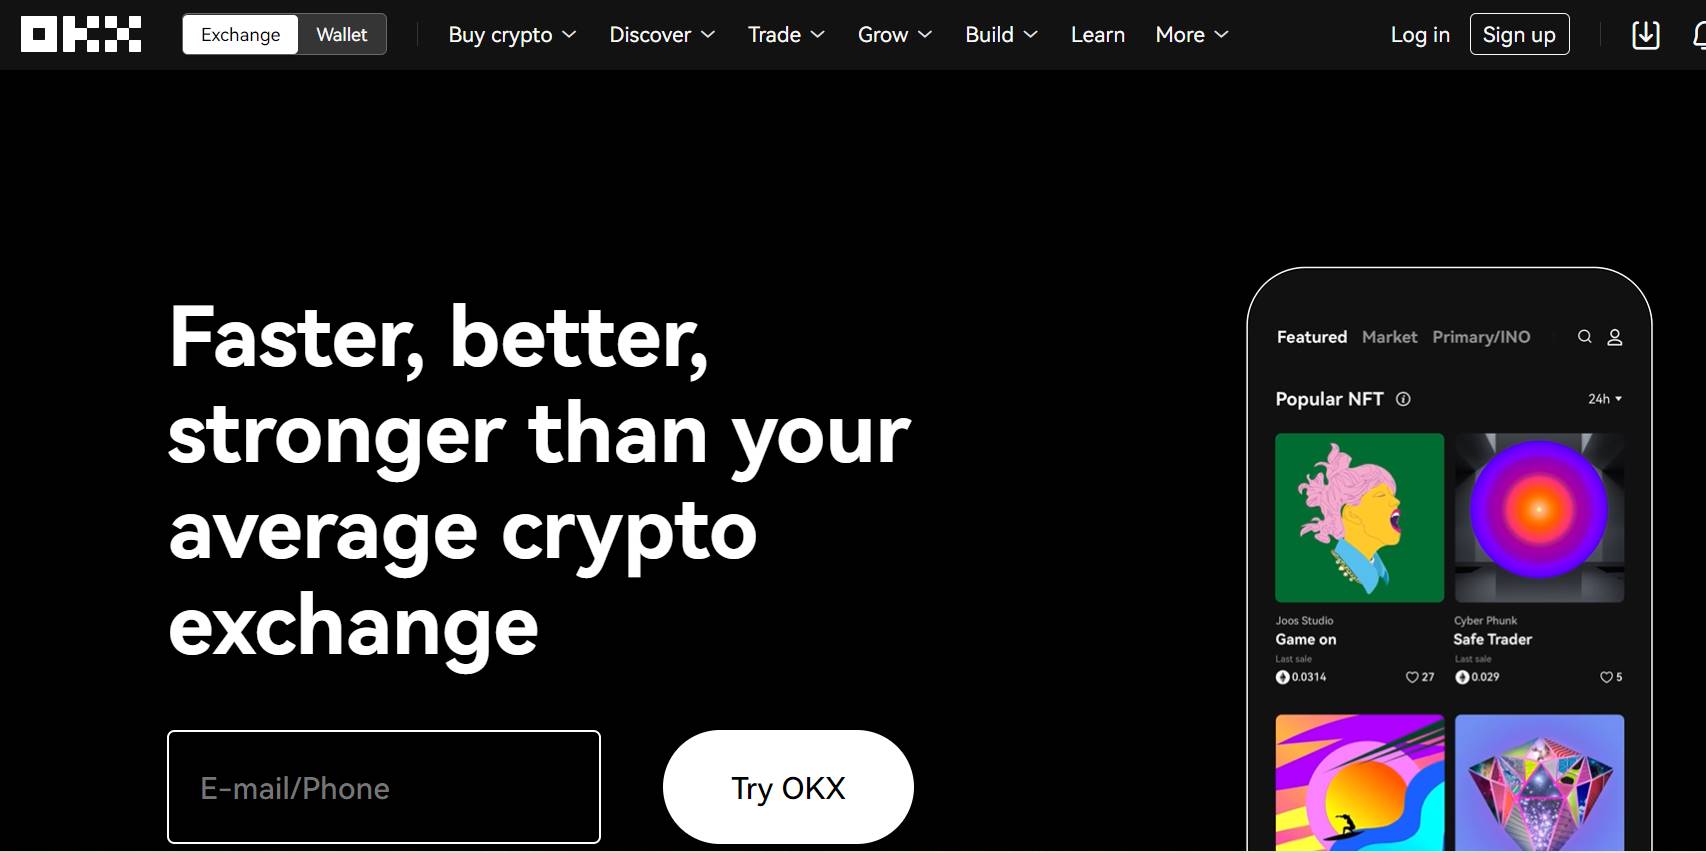 okx crypto exchange